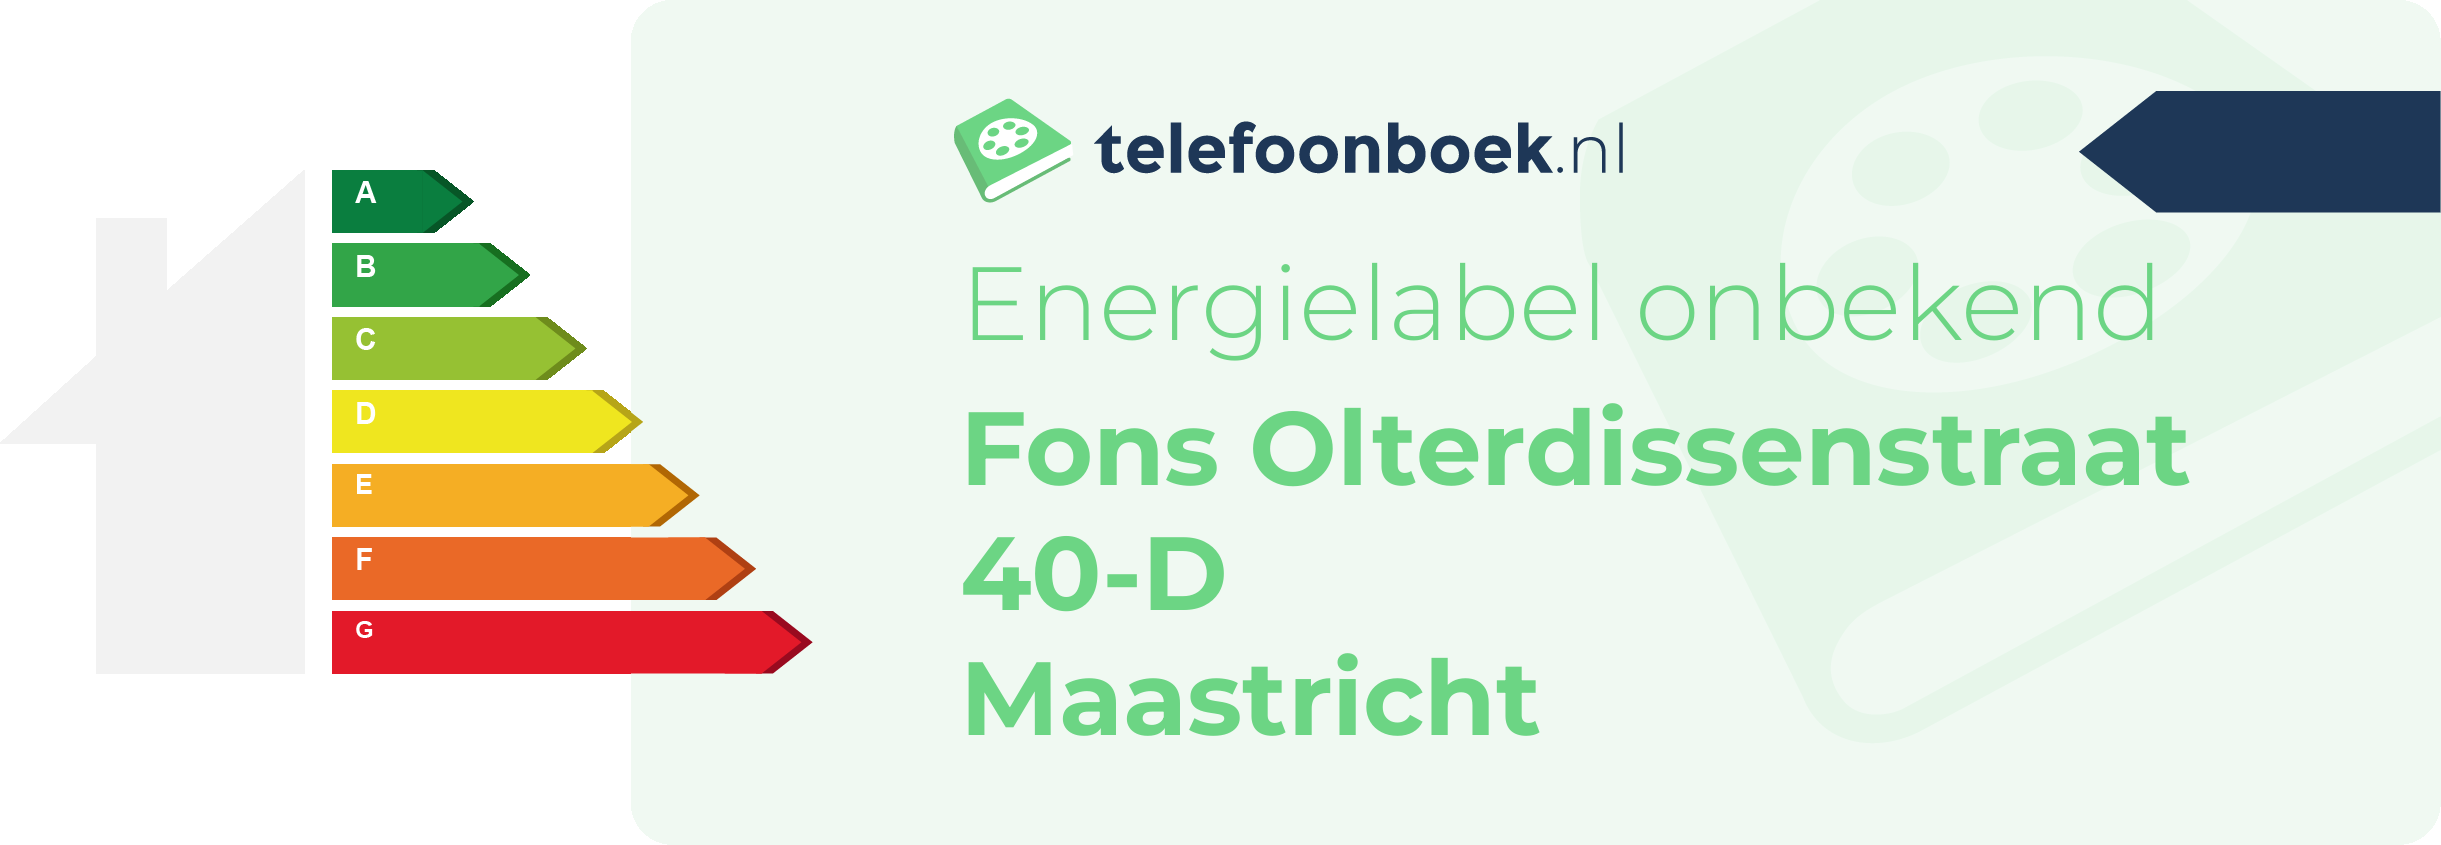 Energielabel Fons Olterdissenstraat 40-D Maastricht